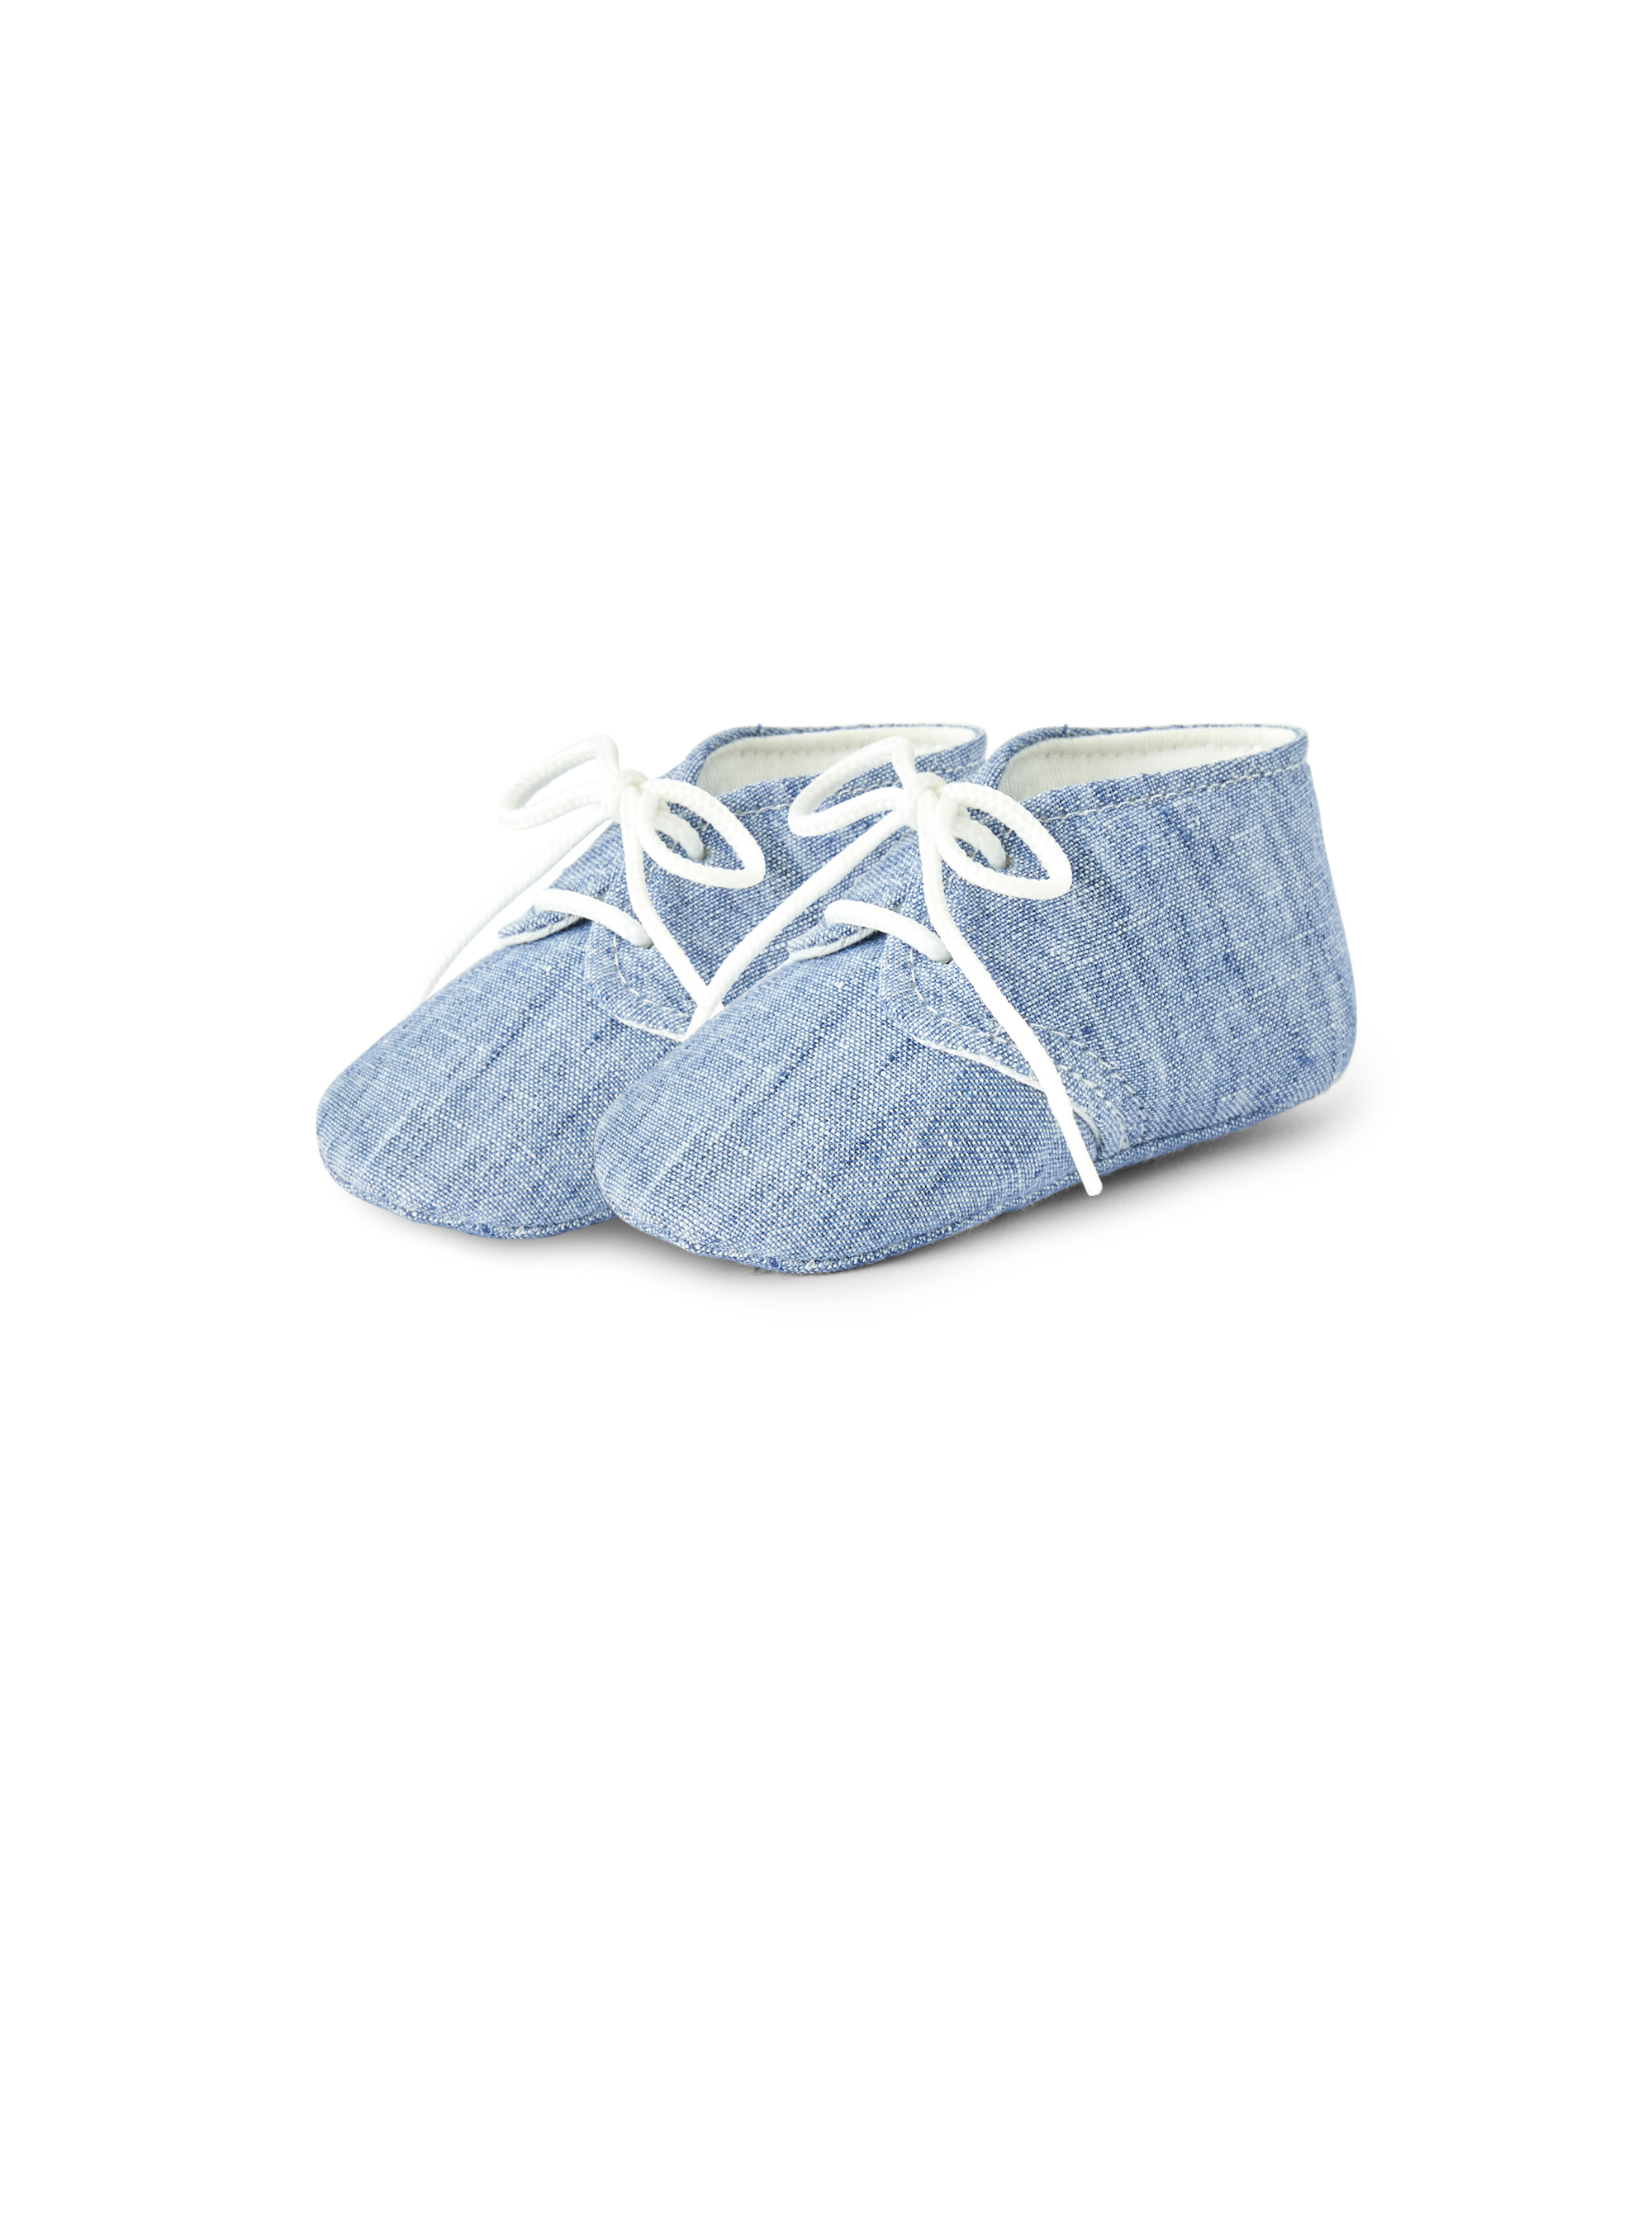 Light blue linen shoes - Shoes - Il Gufo